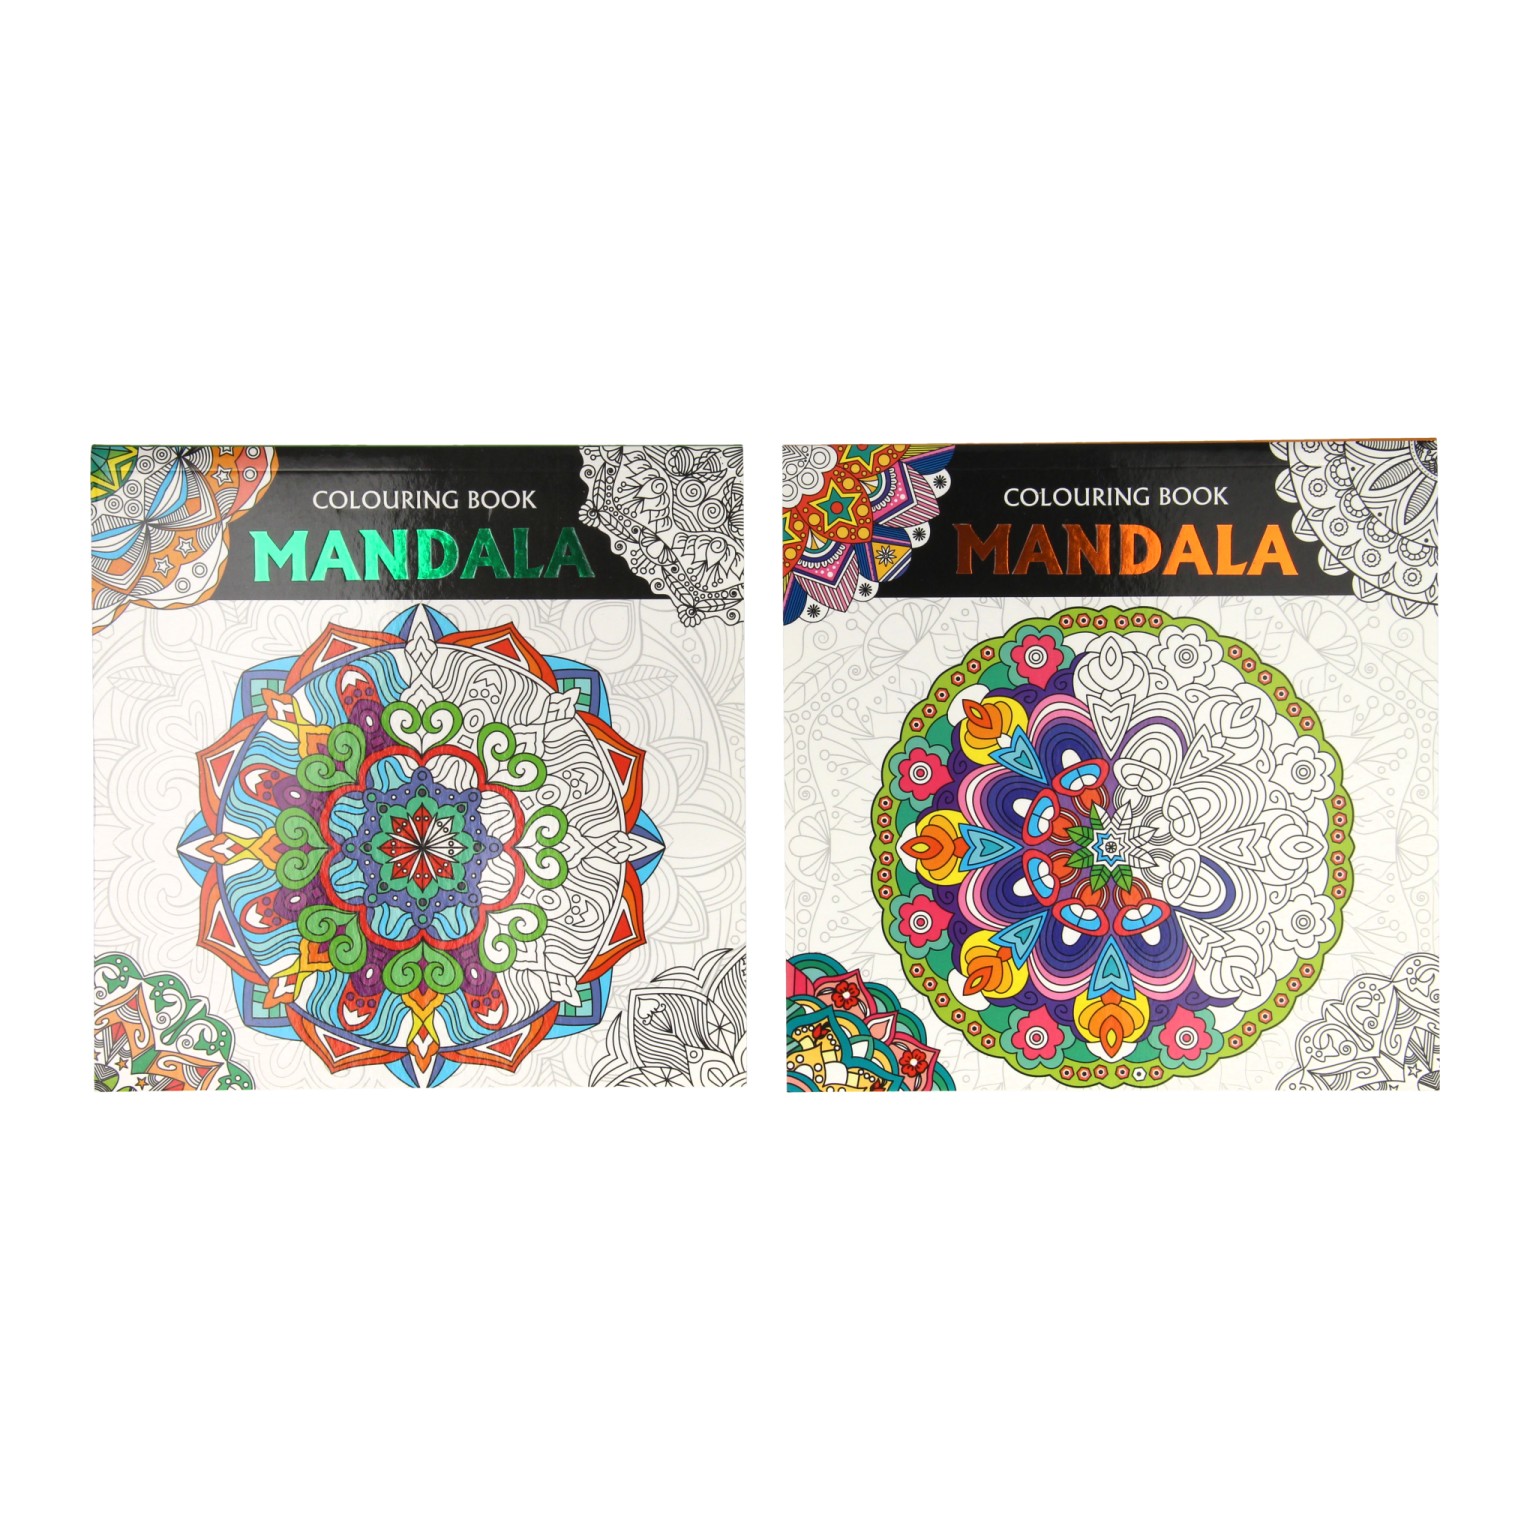 100 Wonderful Different Mandalas Coloring Book: 100 Mandelas